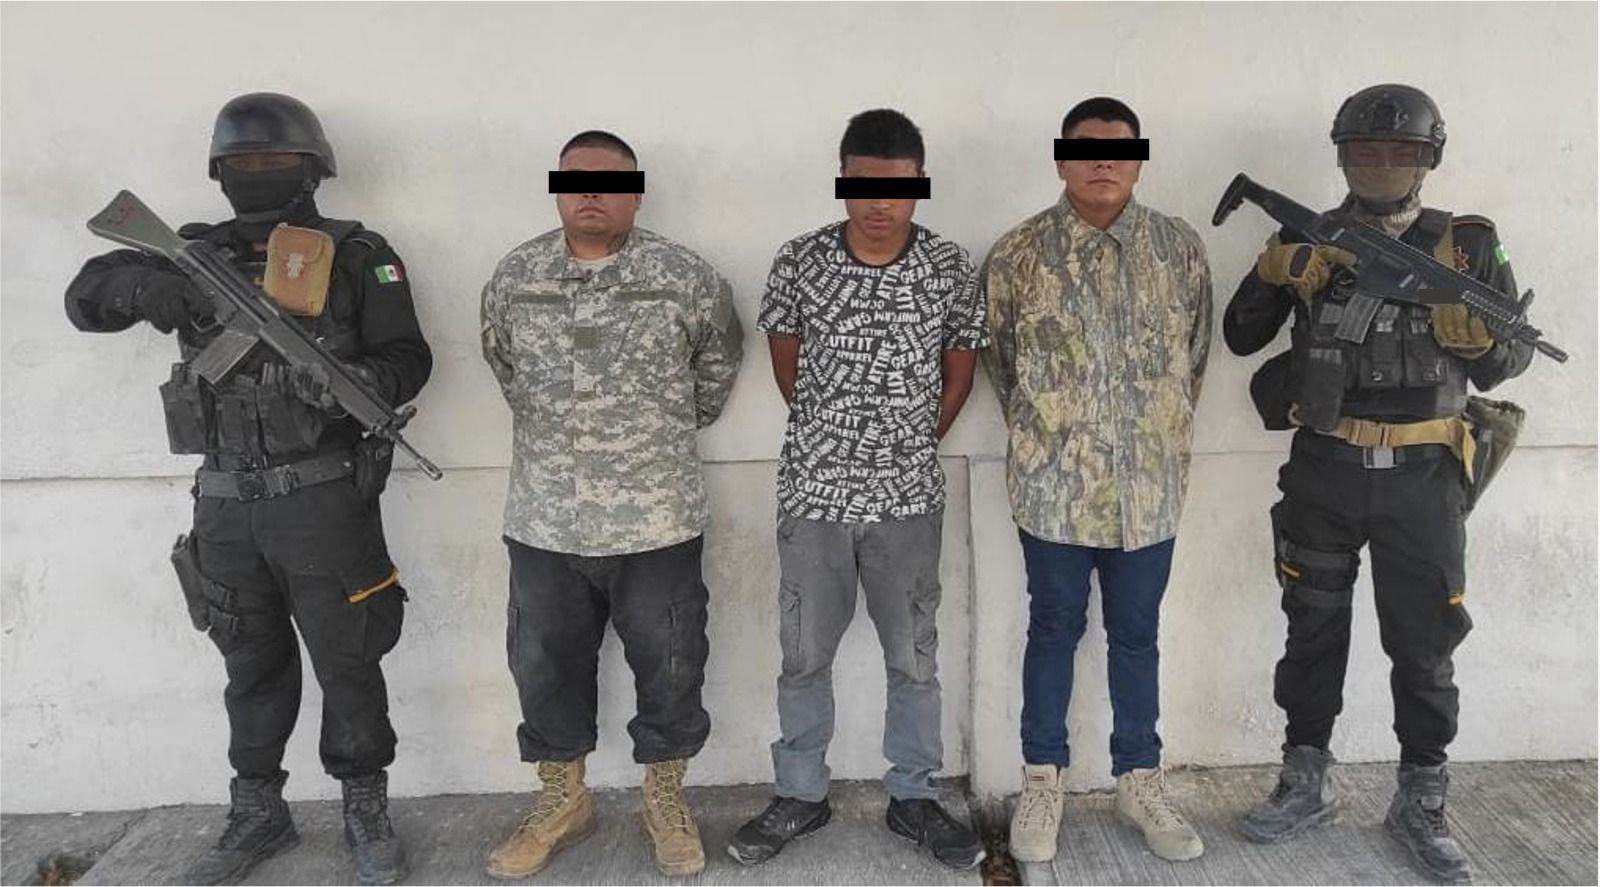 Tres hombres en posesión de varias dosis de drogas y objetos antineumáticos (ponchallantas), fueron arrestados por elementos de Fuerza Civil en el municipio de Lampazos de Naranjo, al norte de Monterrey.